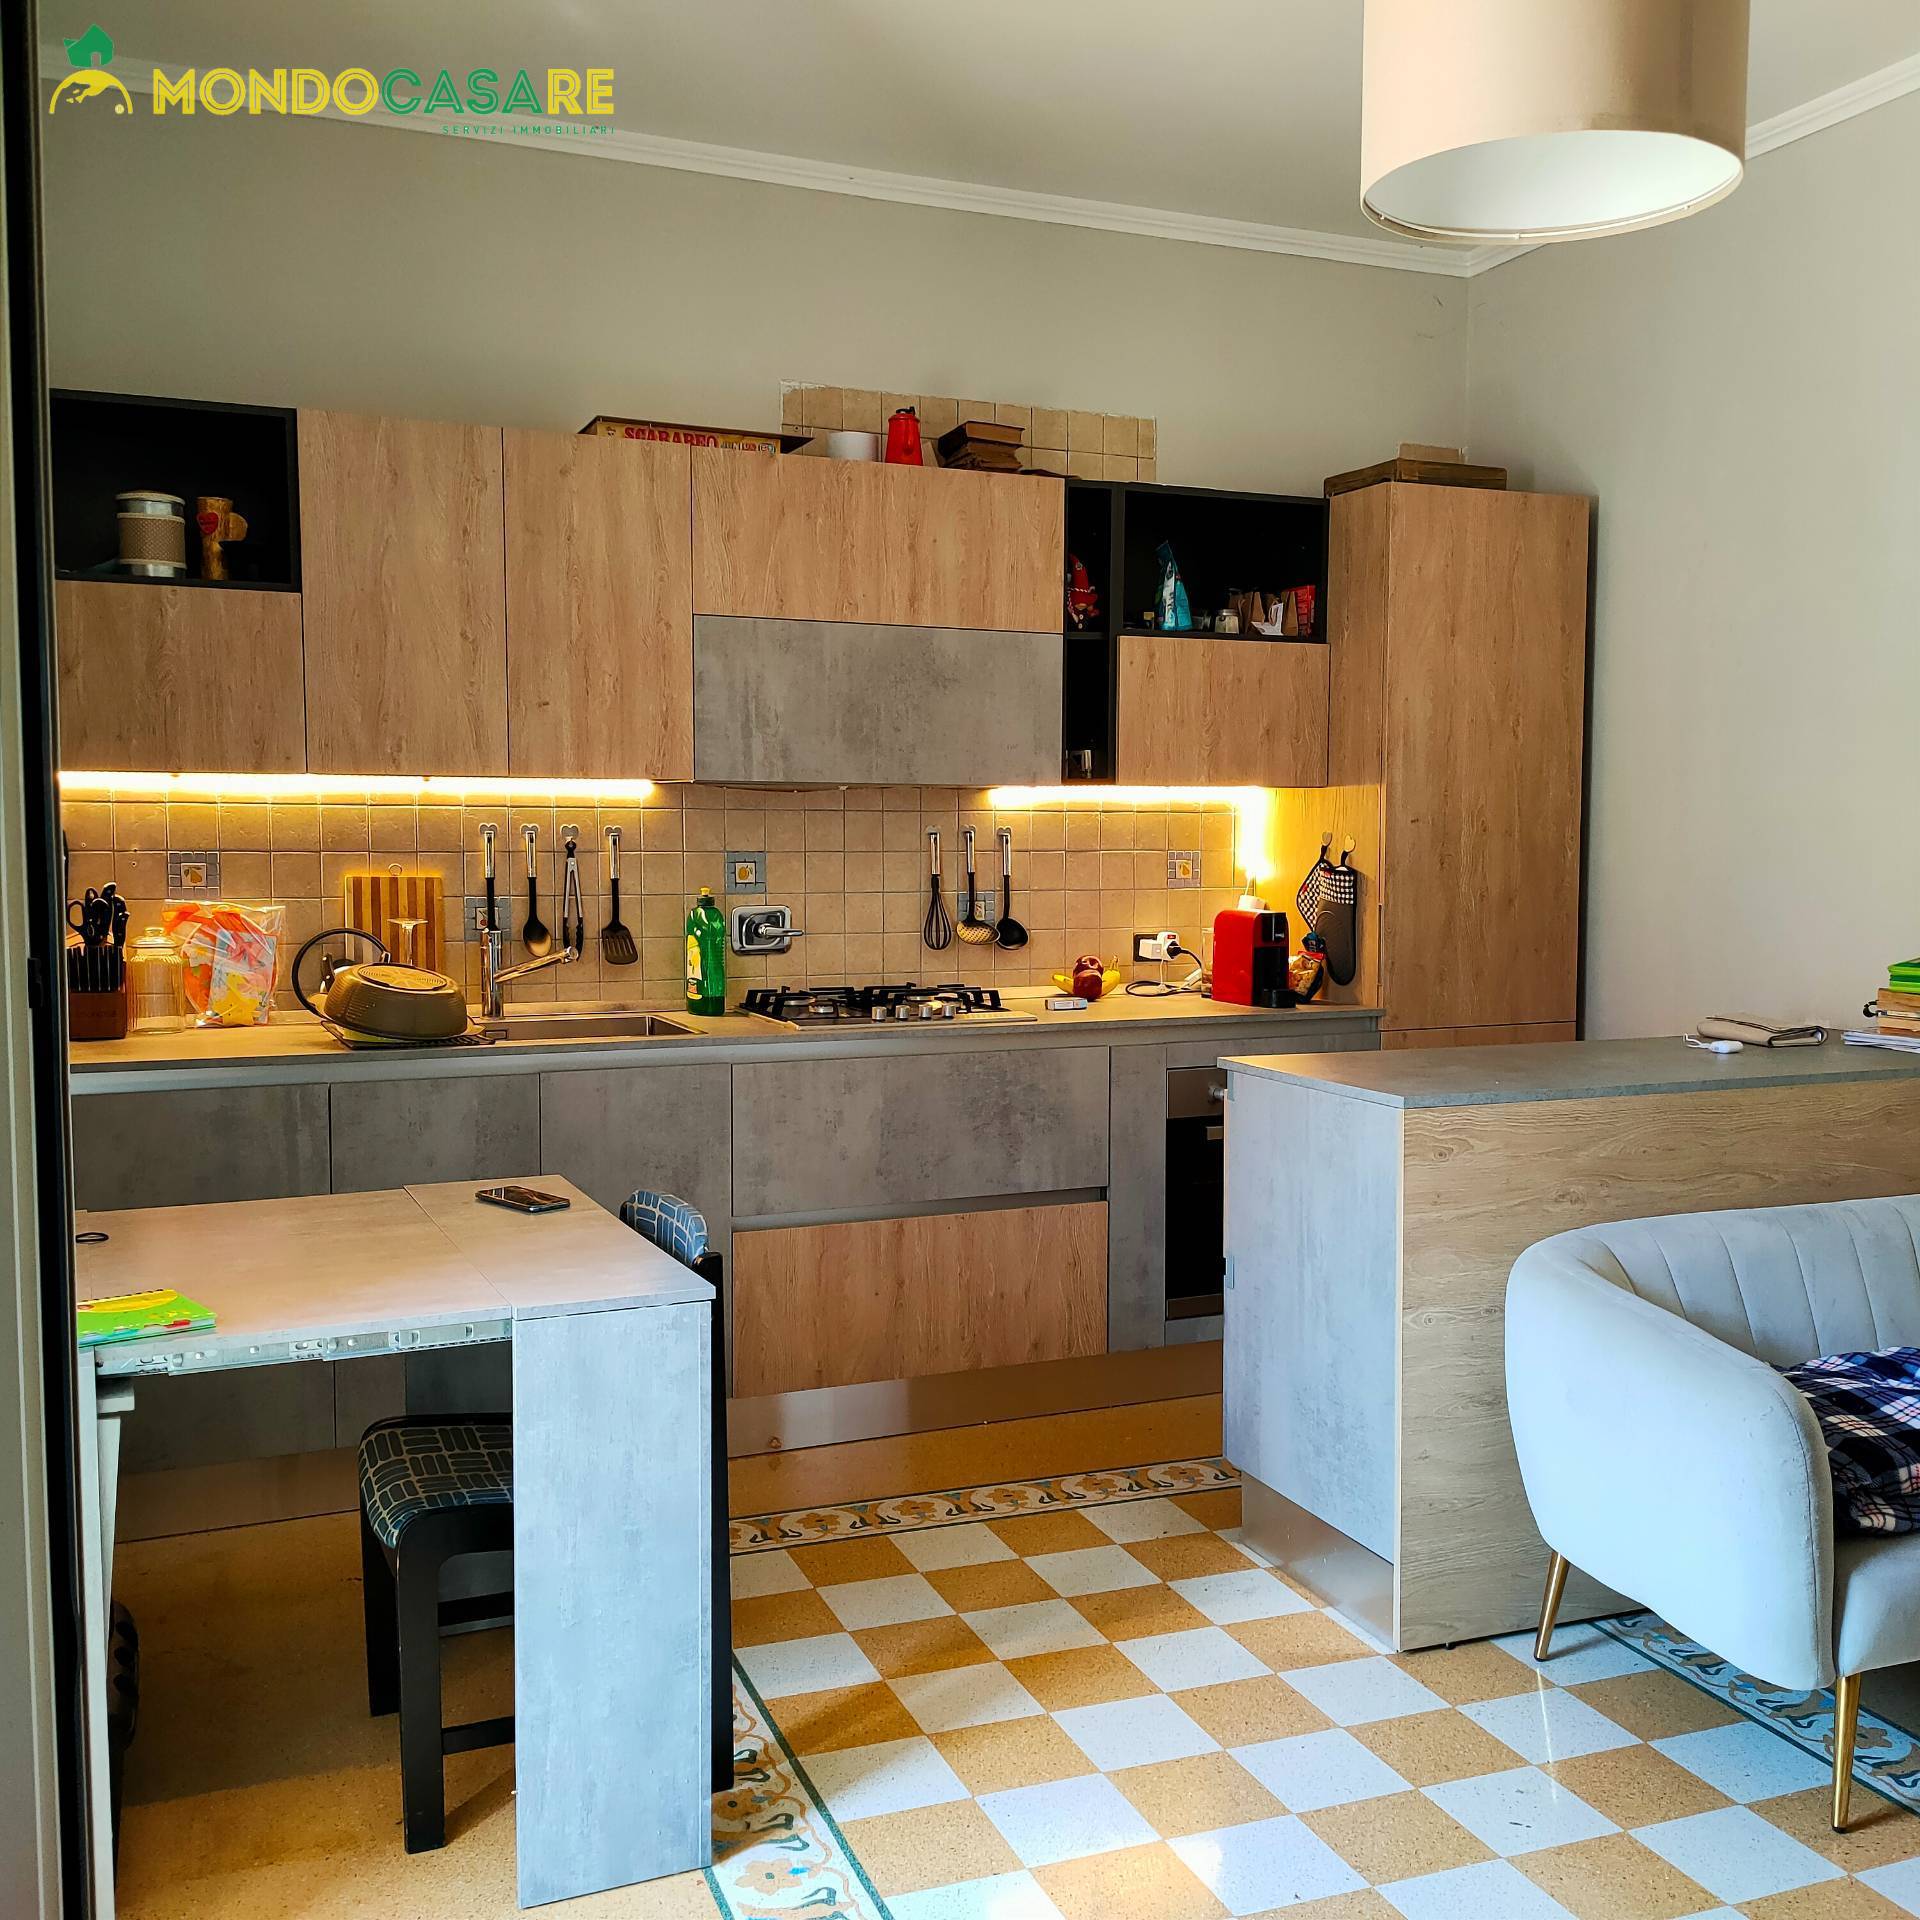 Appartamento in vendita a Palombara Sabina, 3 locali, prezzo € 62.000 | CambioCasa.it